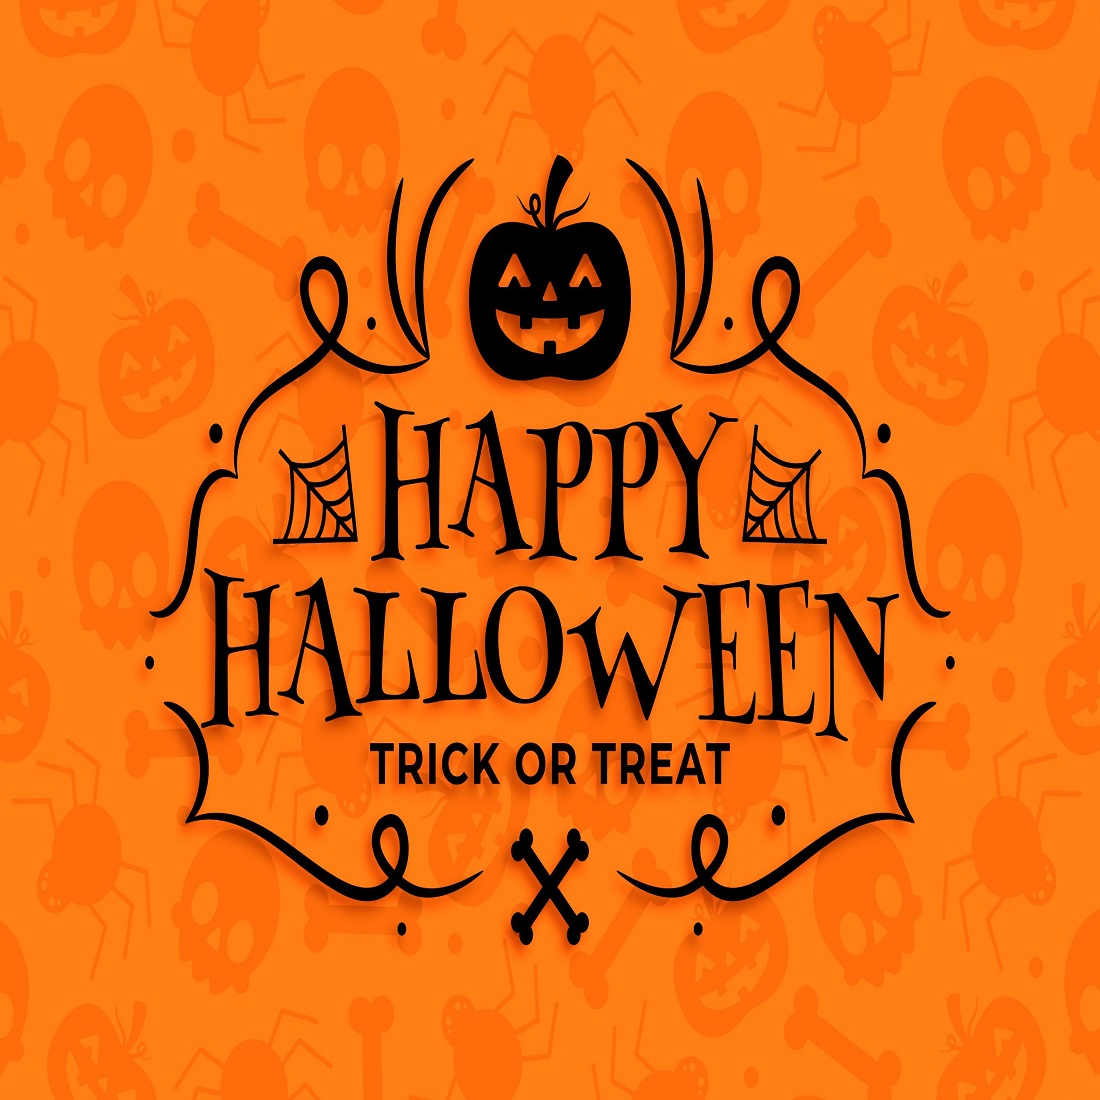 Happy Halloween wallpaper design cover image.